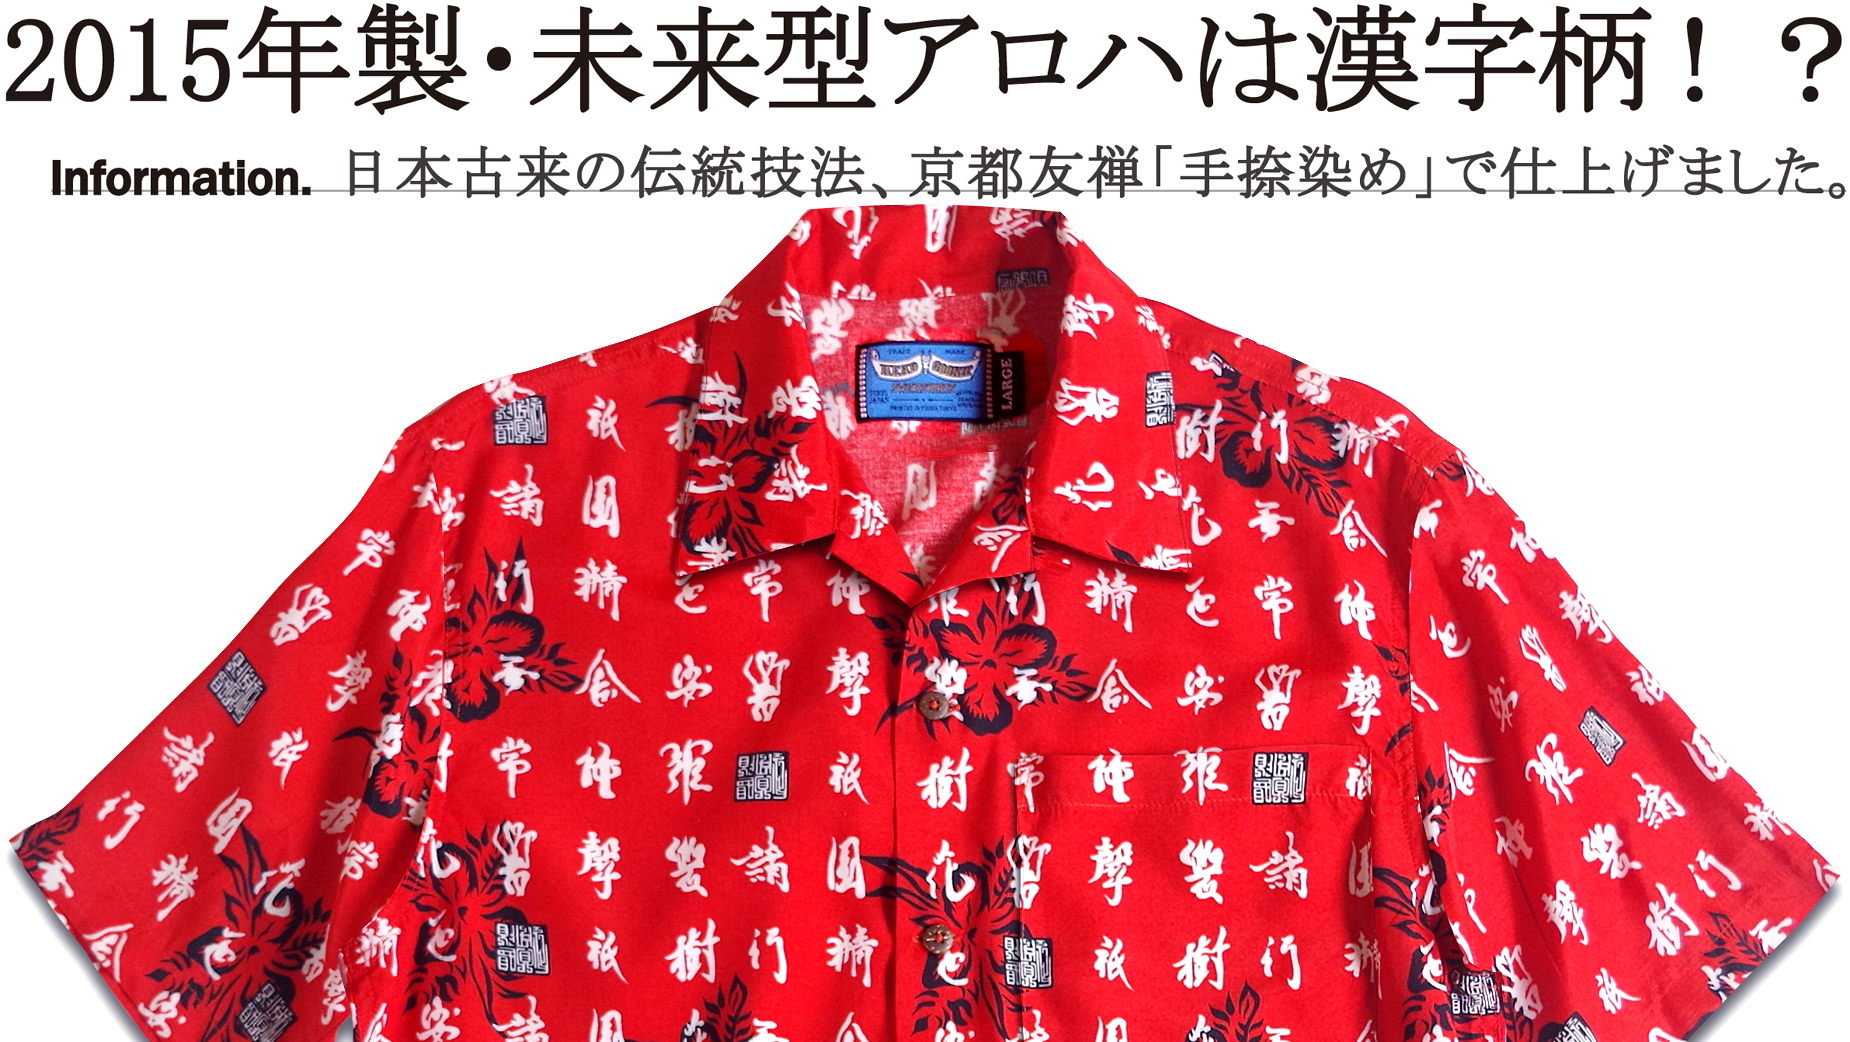 映画バックトゥザフューチャーKANJI FUTURE ALOHA SHIRTS未来型アロハシャツ